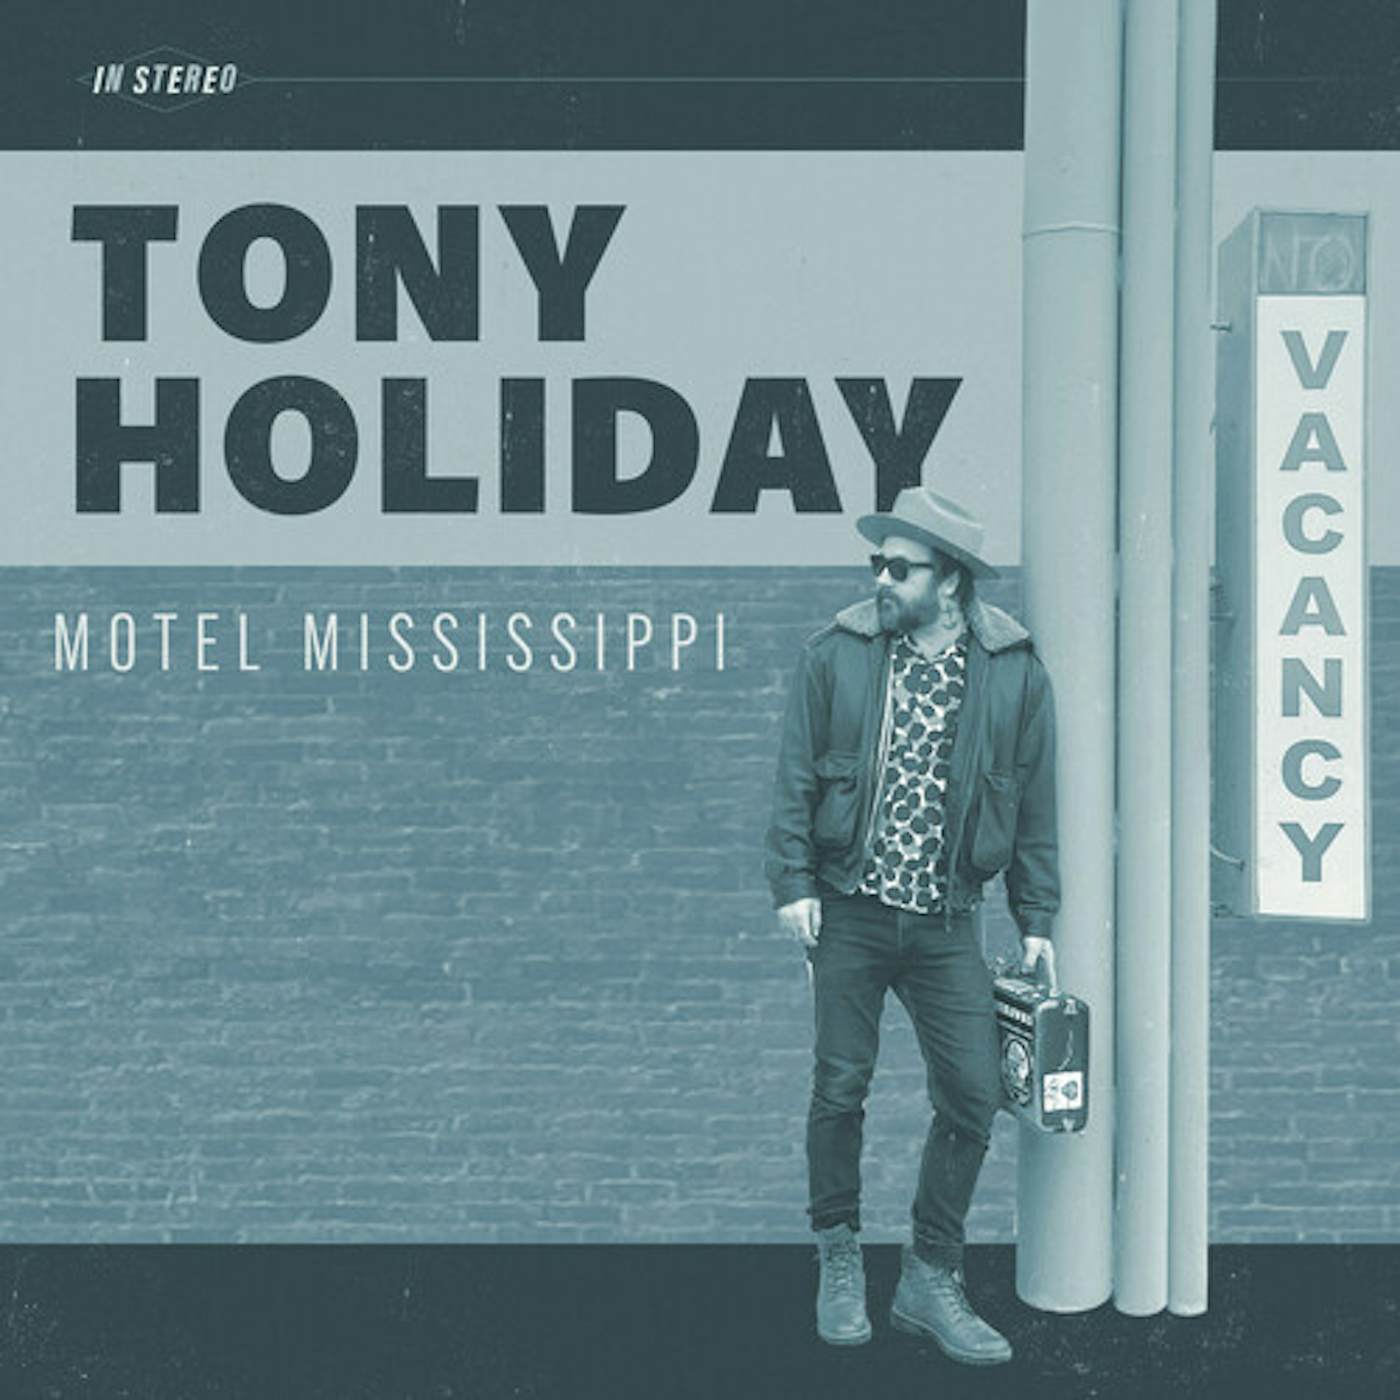 Tony Holiday Motel Mississippi Vinyl Record